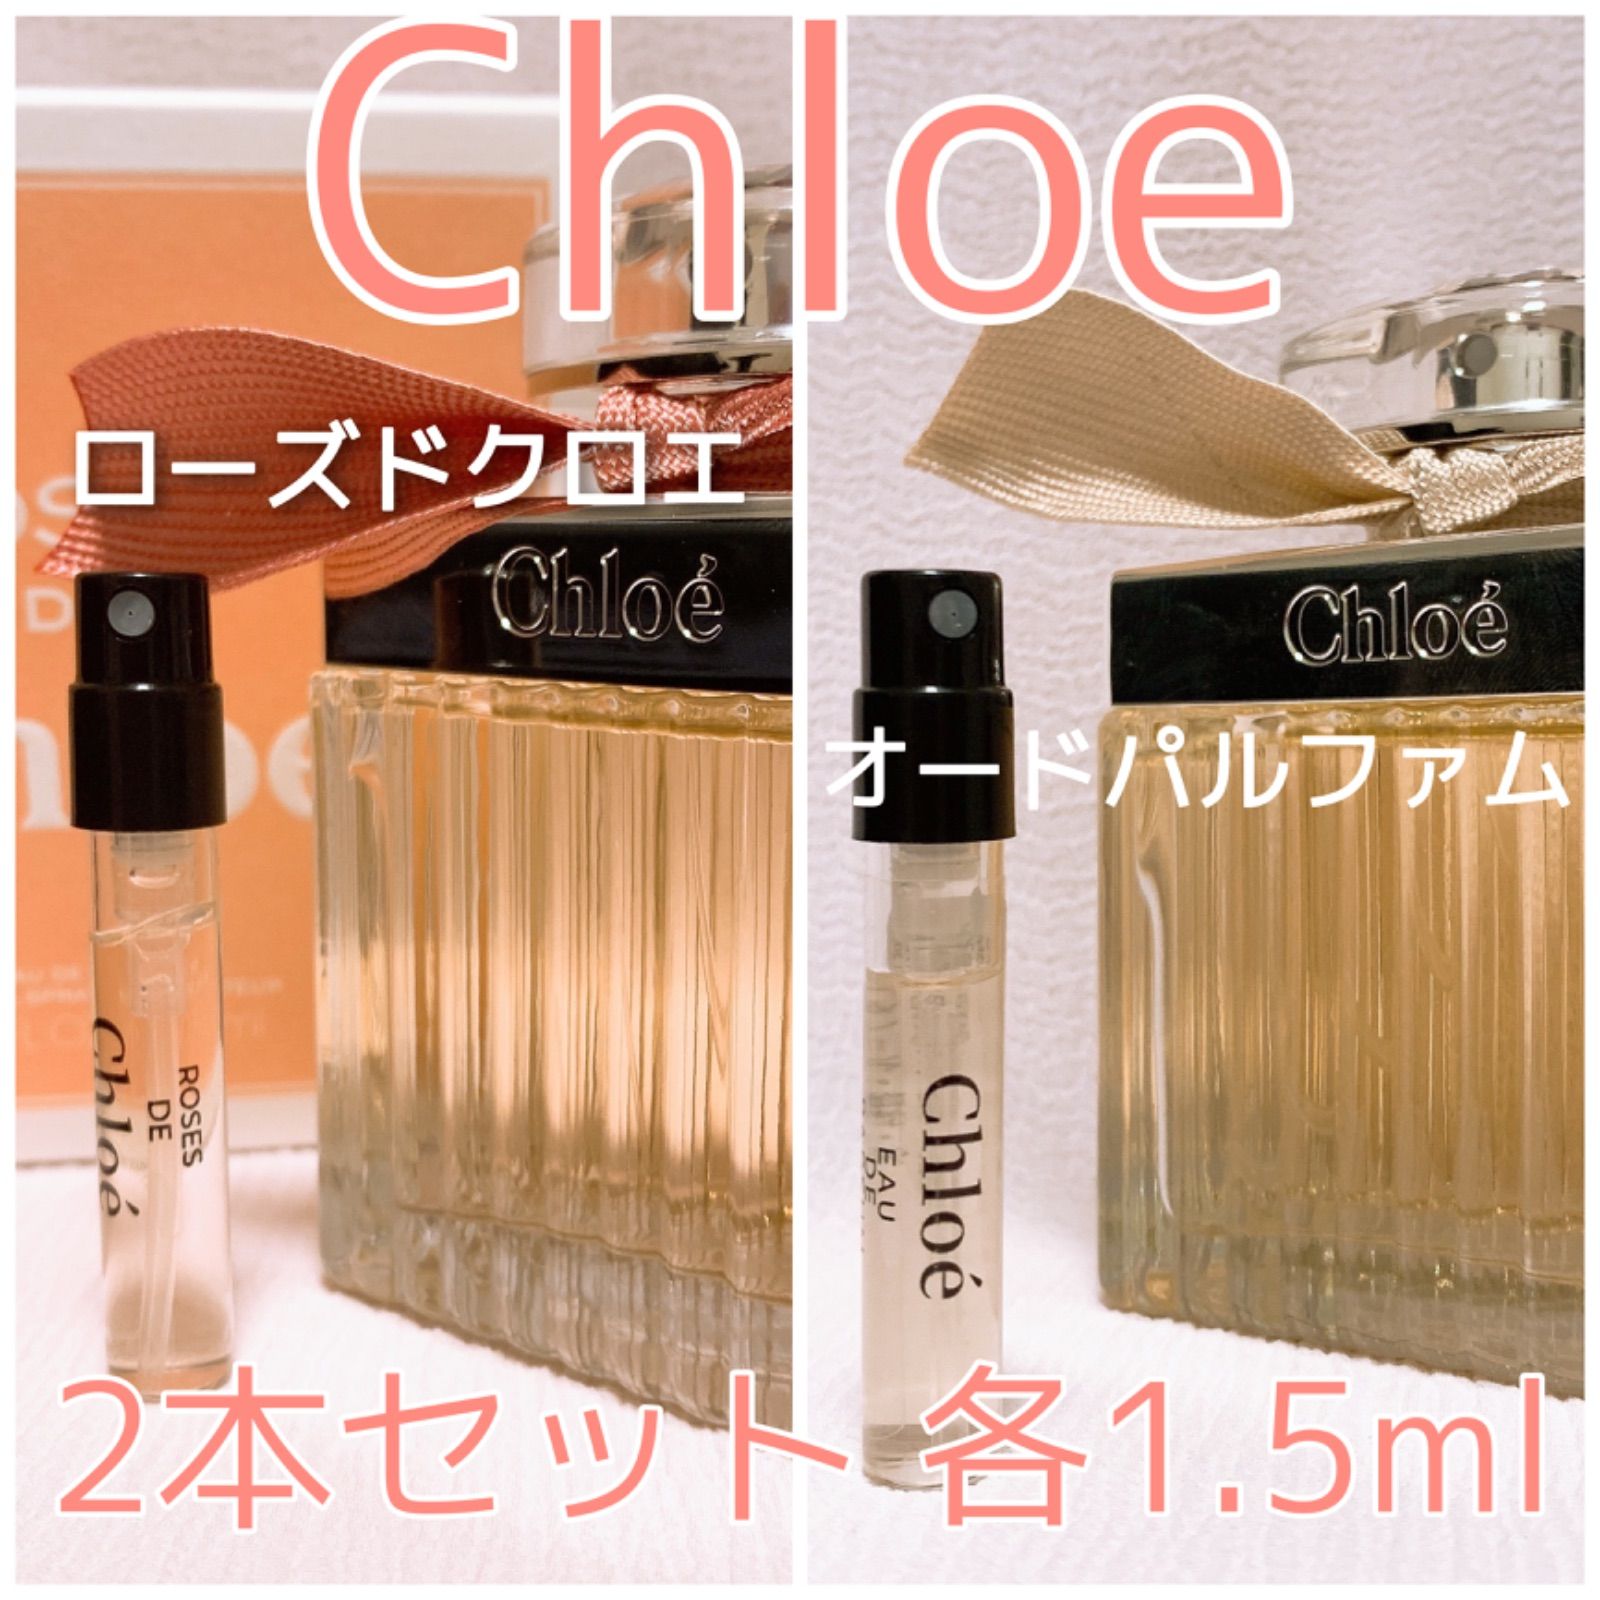 2本セット クロエ オードパルファム・ローズドクロエ 香水 各1.5ml